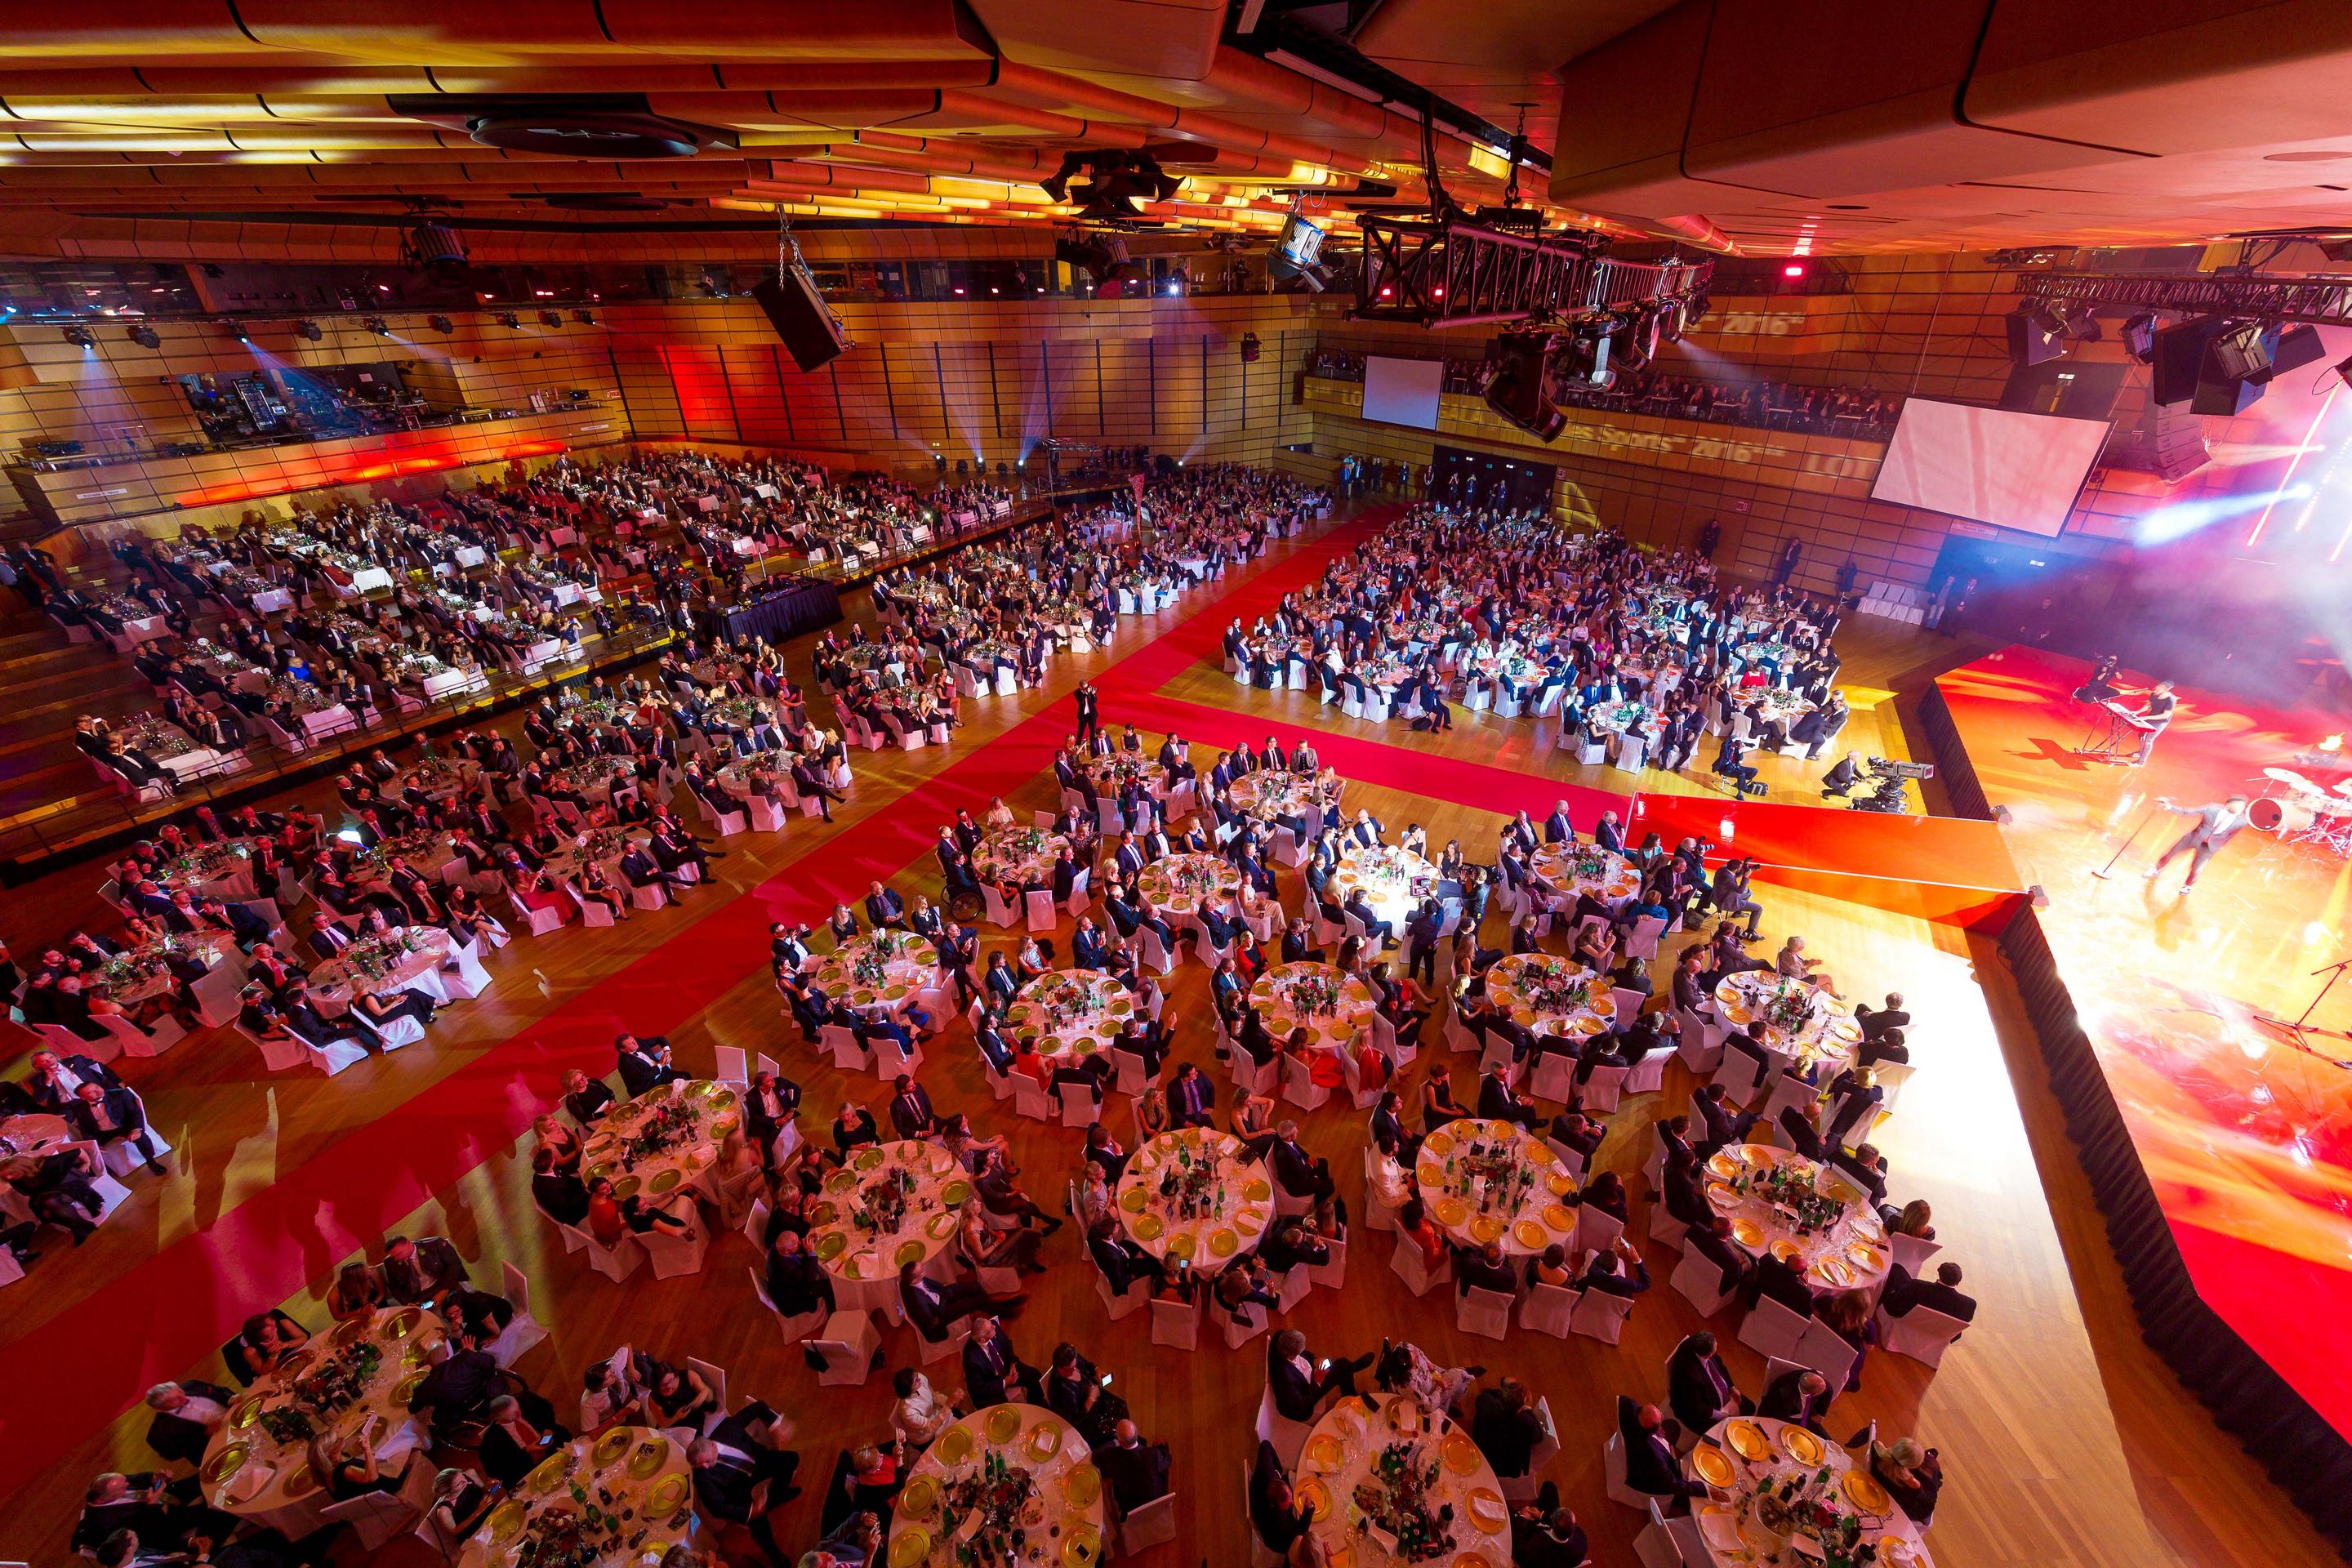 Foto: Menschen in einer Halle auf Gala-Tischen, roter Teppich, Buehne